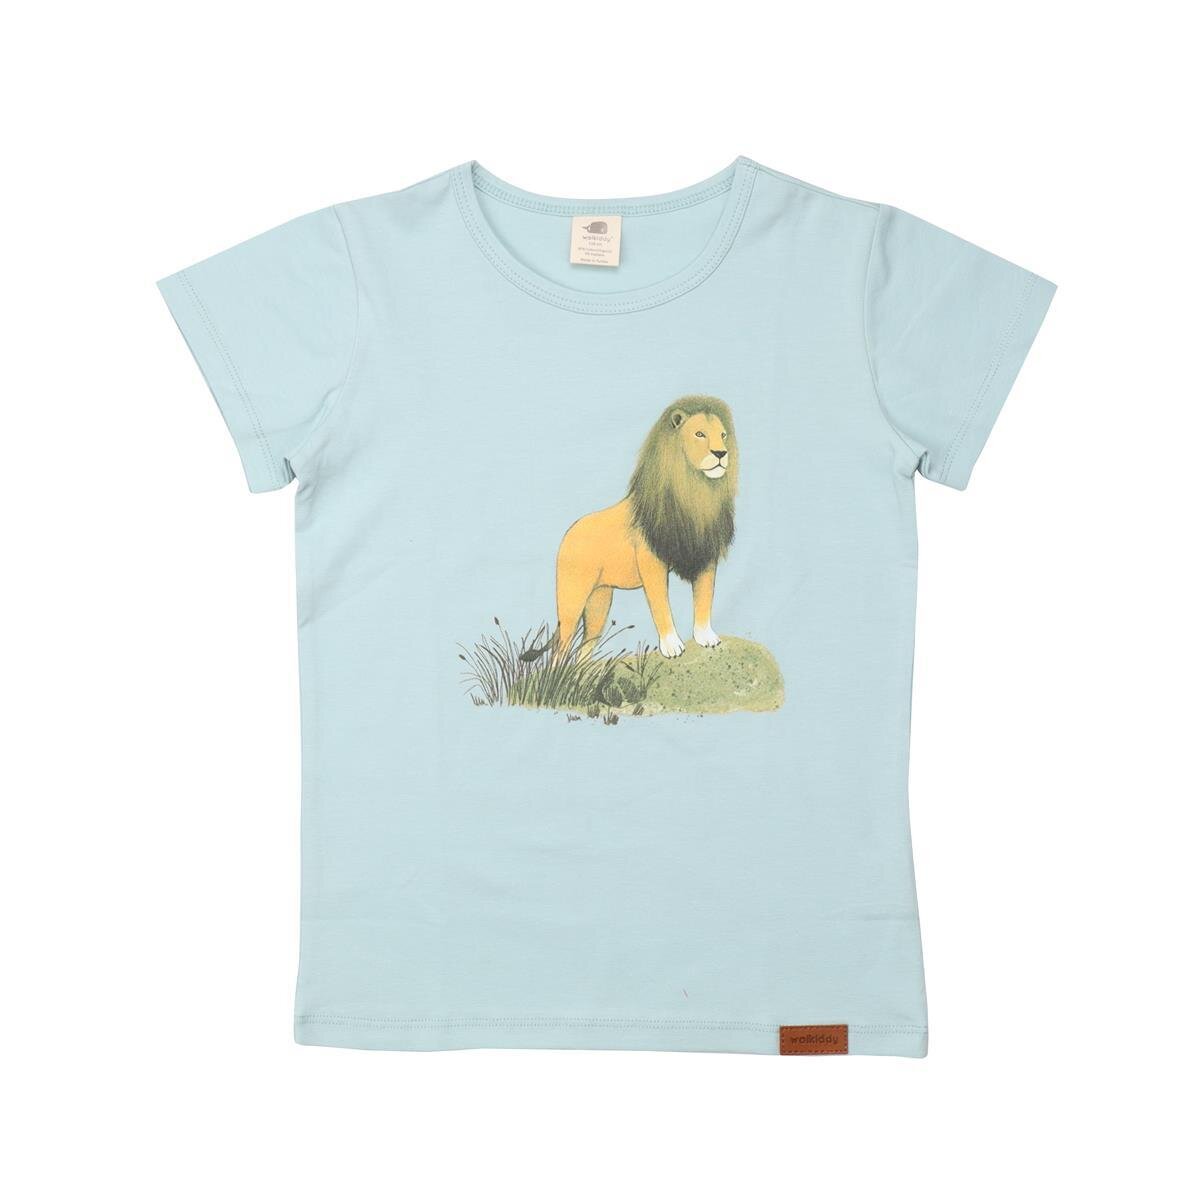 Umweltfreundliches T-Shirt aus Bio-Baumwolle - € von Walkidd, LNGN22-318 13,17